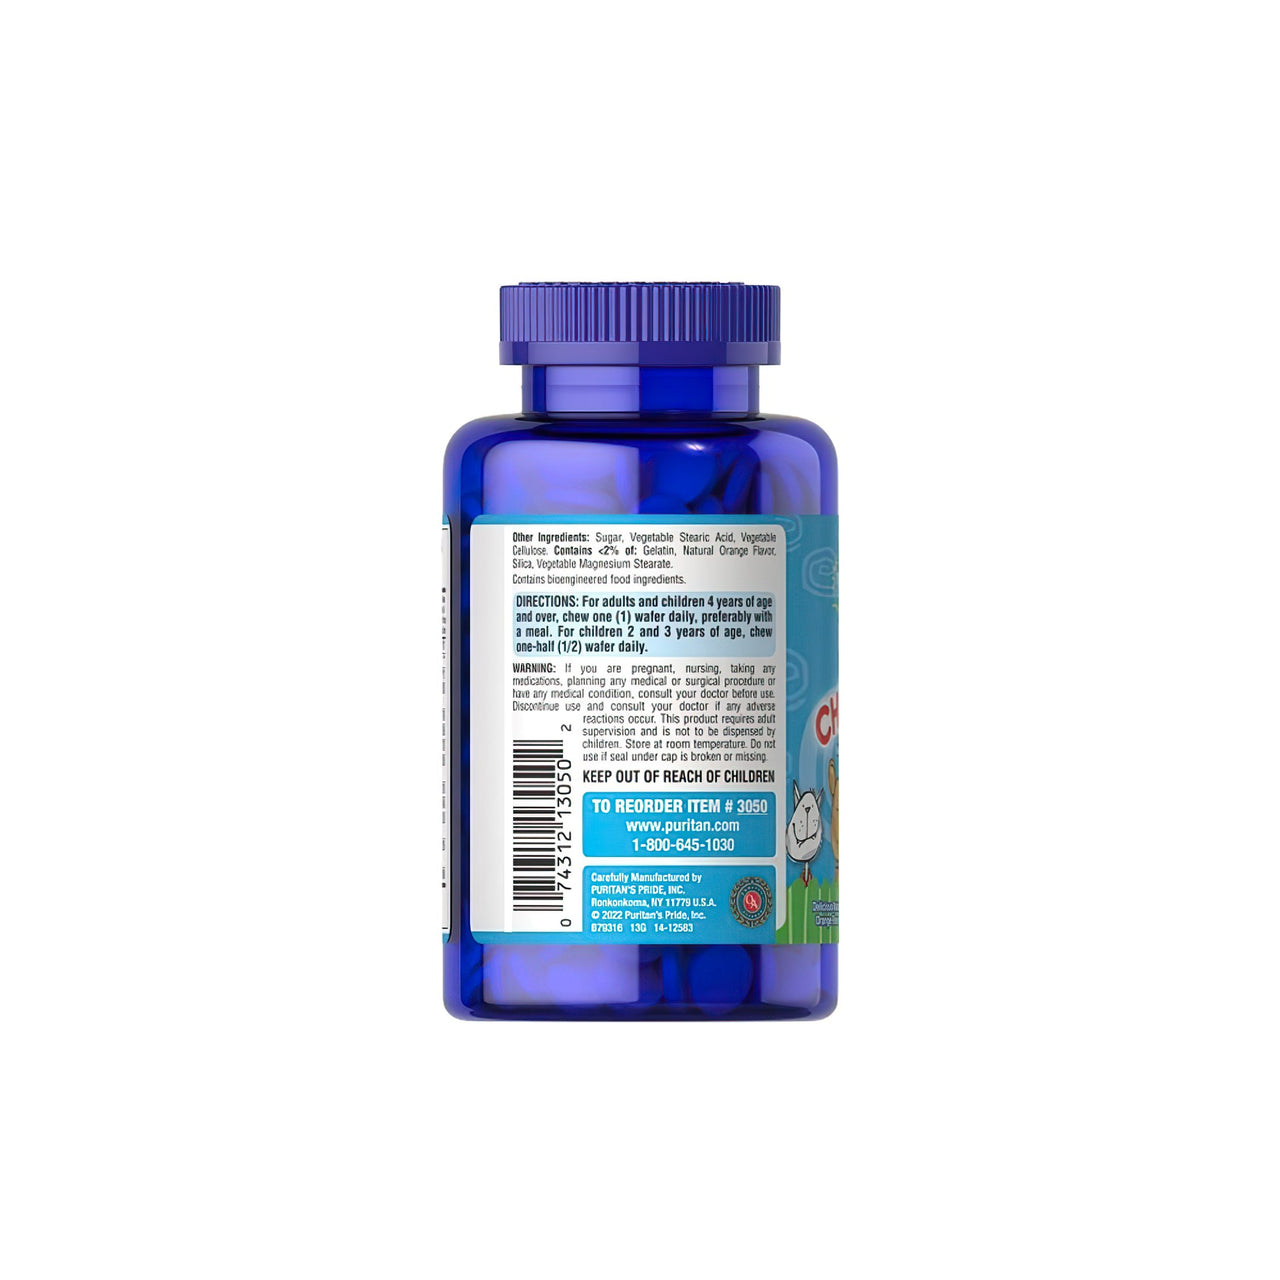 O verso de um frasco azul de PRE- Vites Chlidren's multivitamin 100 wafers mastigáveis, contendo vitaminas essenciais de Puritan's Pride.